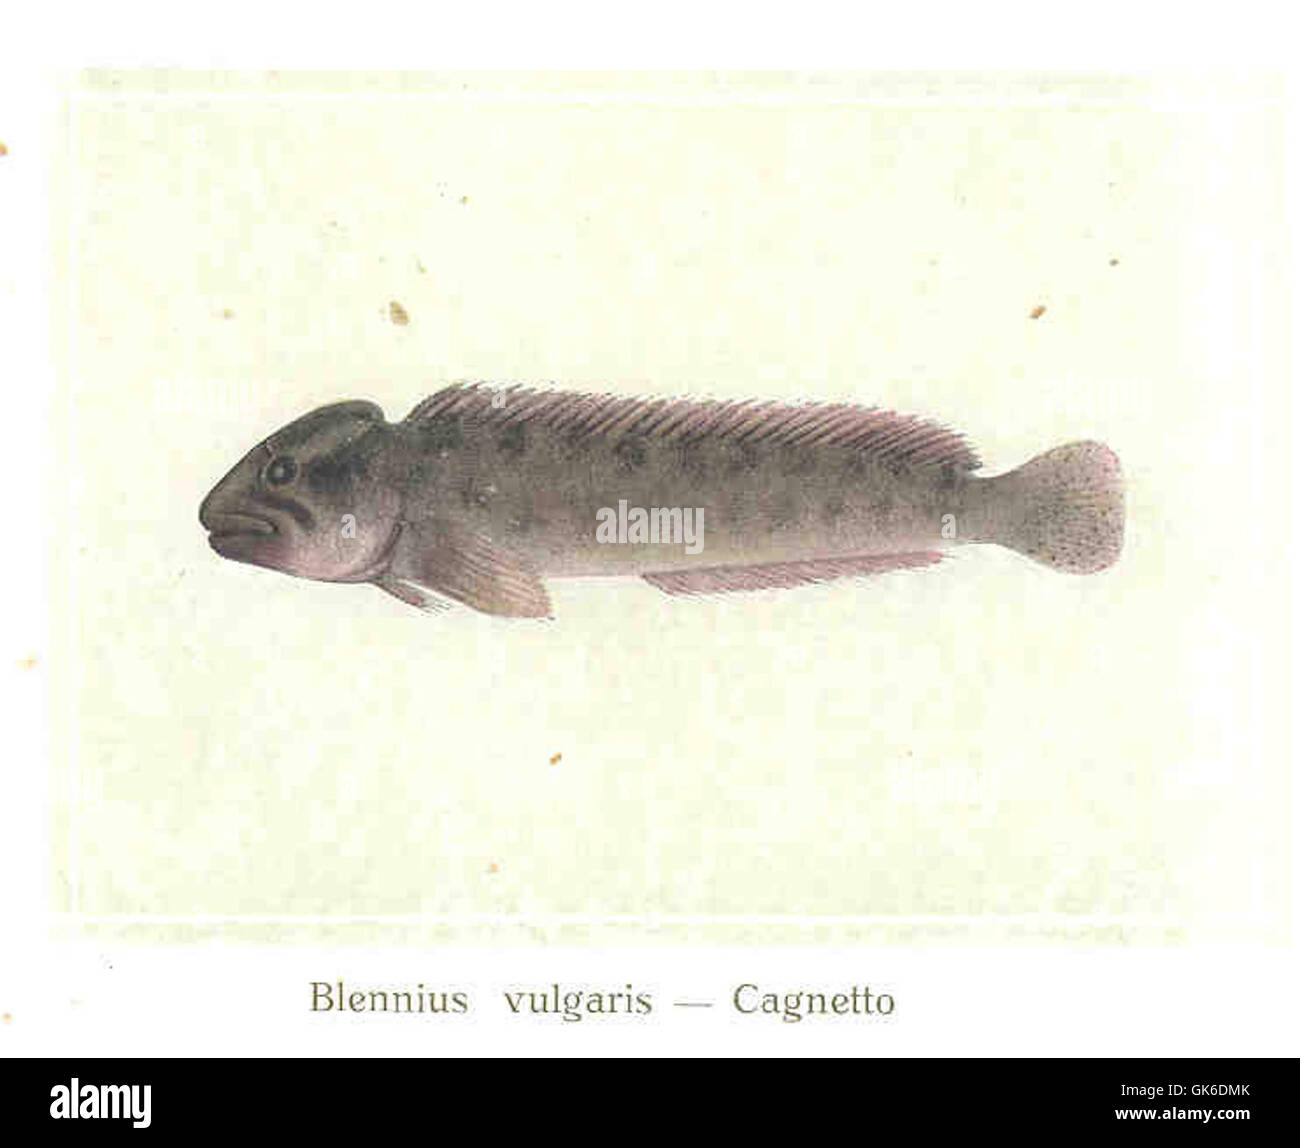 35717 Blennius vulgaris -- Cagnetto Stock Photo